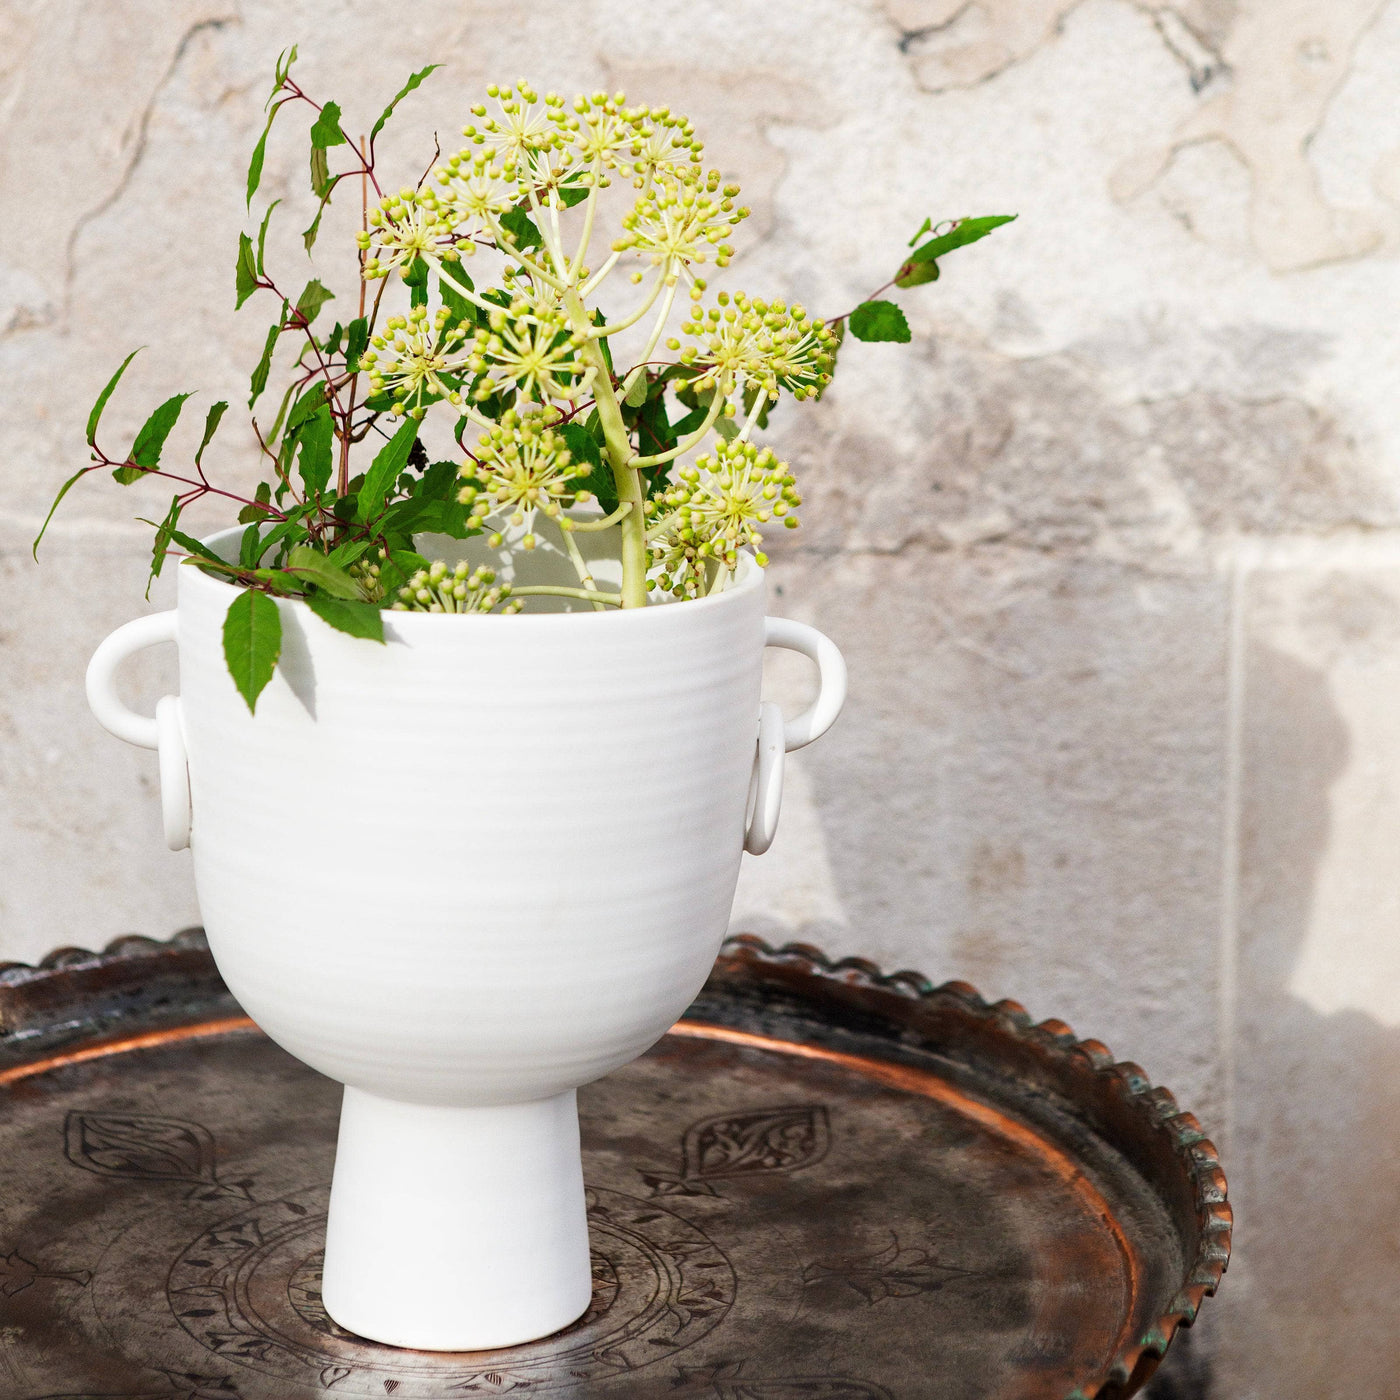 Branksome Ceramic Vase, White, S Vases sazy.com